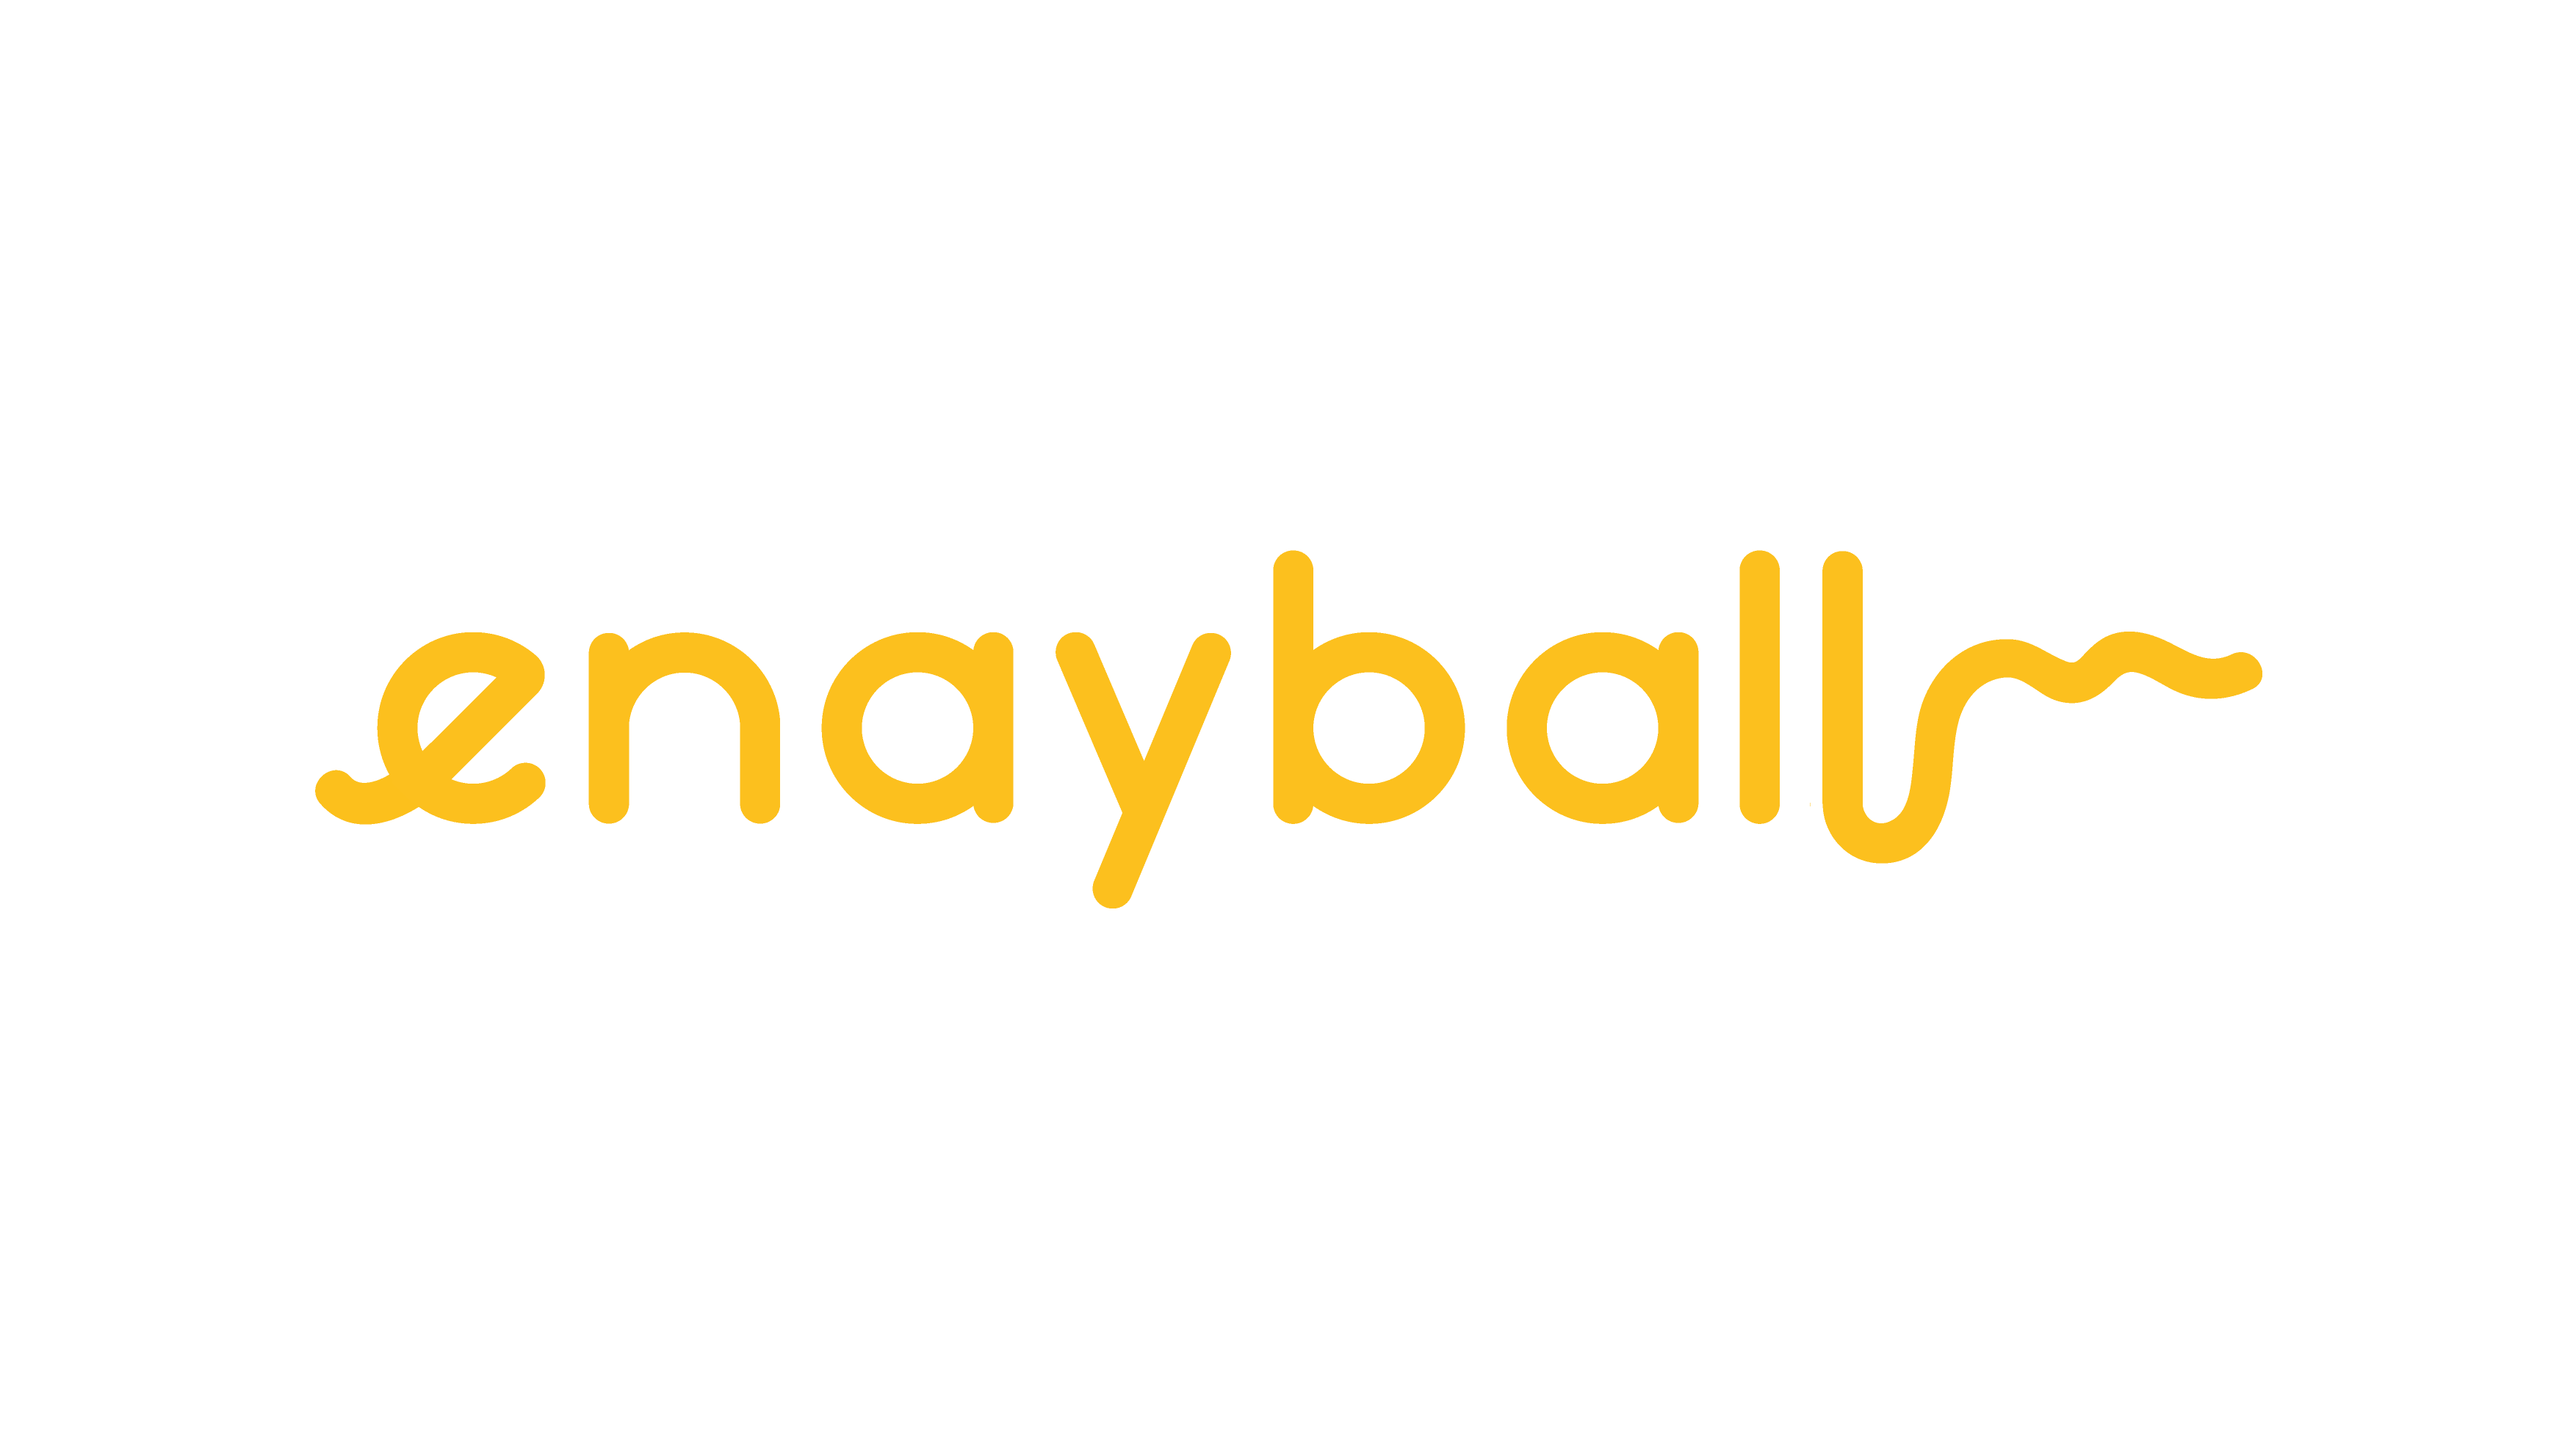 Enayball's logo